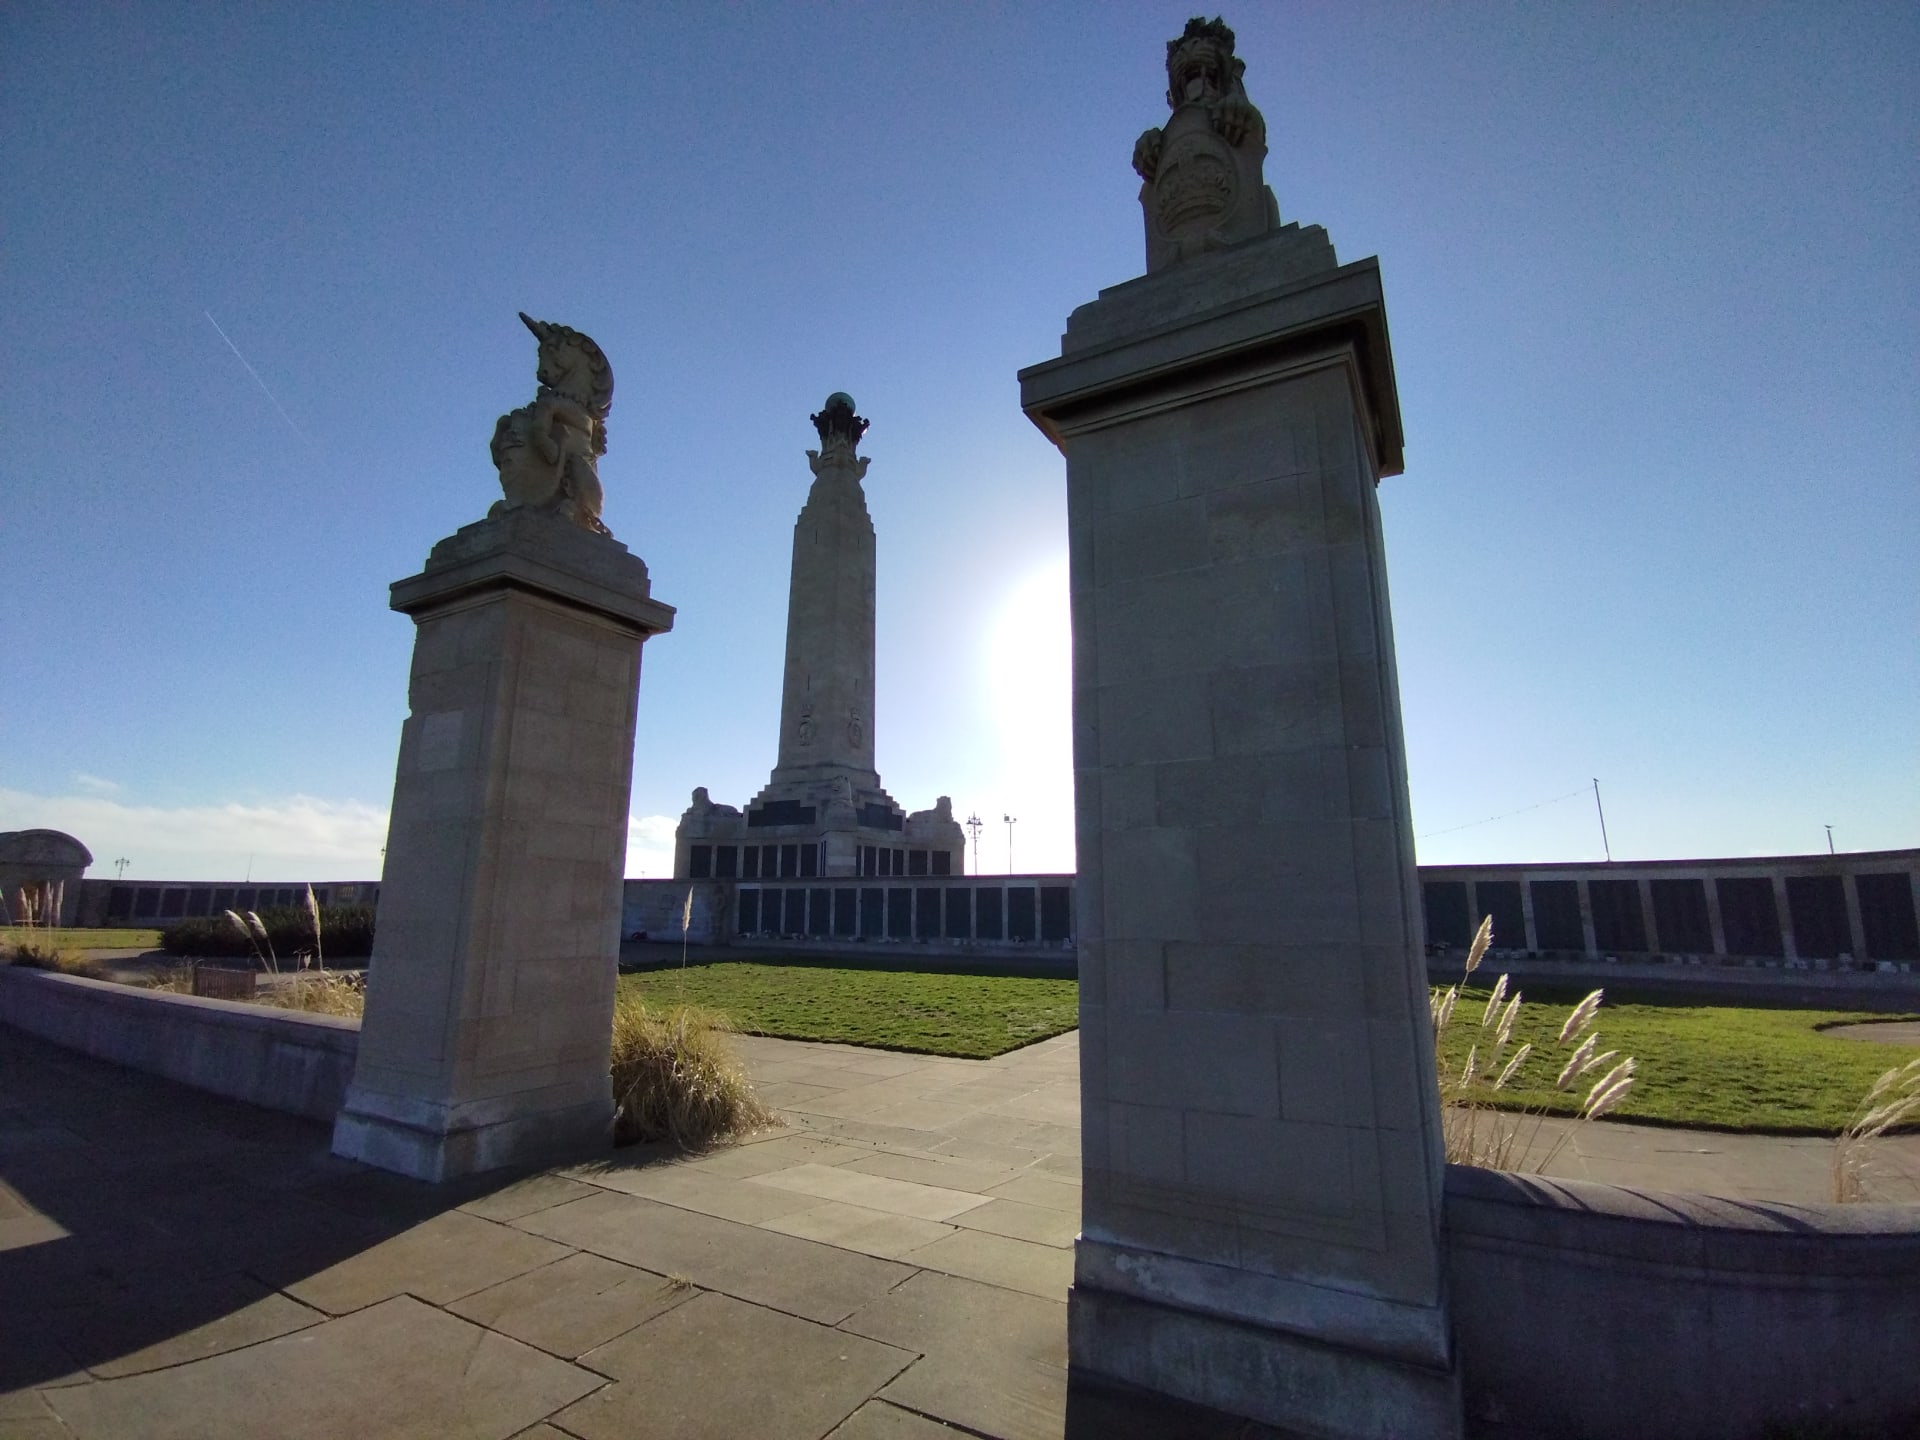 Ze vzpomínkových akcí na oběti válek a k úctě veteránů, které se tento víkend konají ve Velké Británii. Snímky z přístavu Portsmouth, kde se nachází strategická námořní základna.